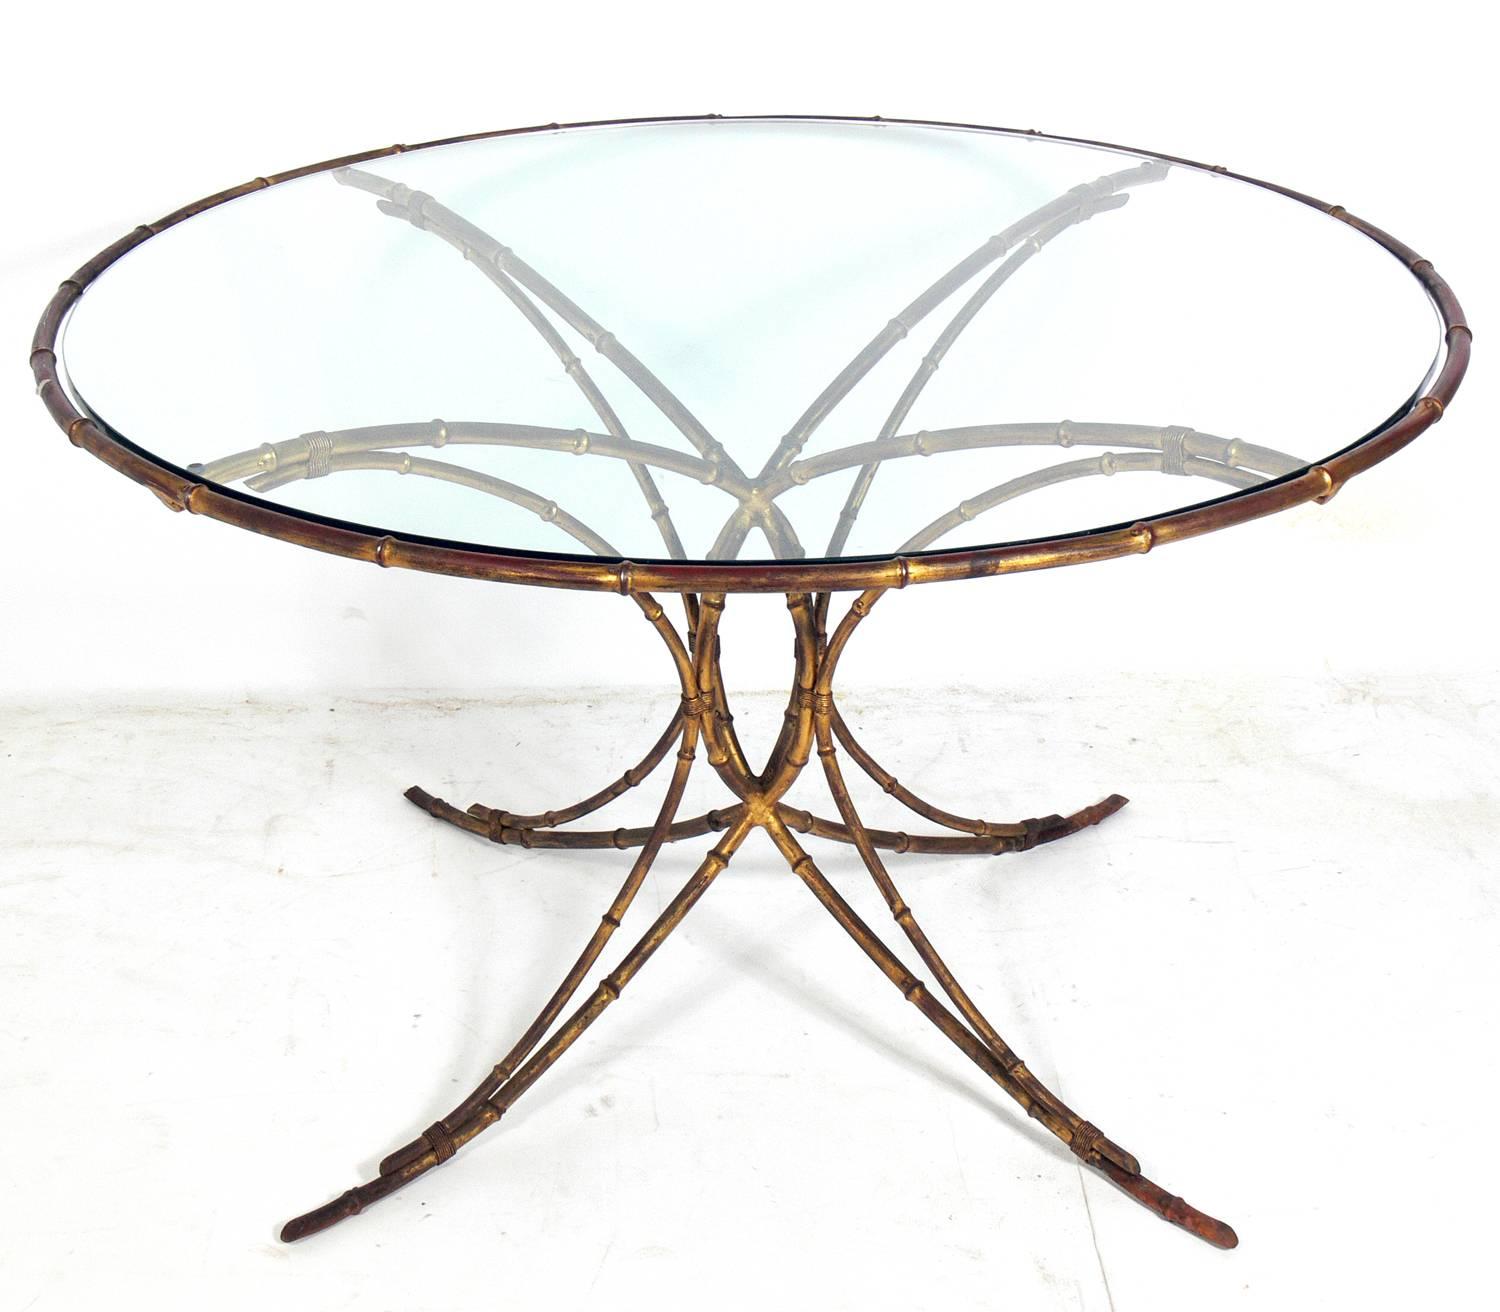 Elegantes Esstischset aus vergoldetem Metall mit Bambusimitat, wahrscheinlich italienisch, um 1950. Das Set besteht aus dem Esstisch, zwei Sesseln und zwei Beistellstühlen. Der Esstisch misst: 28,5